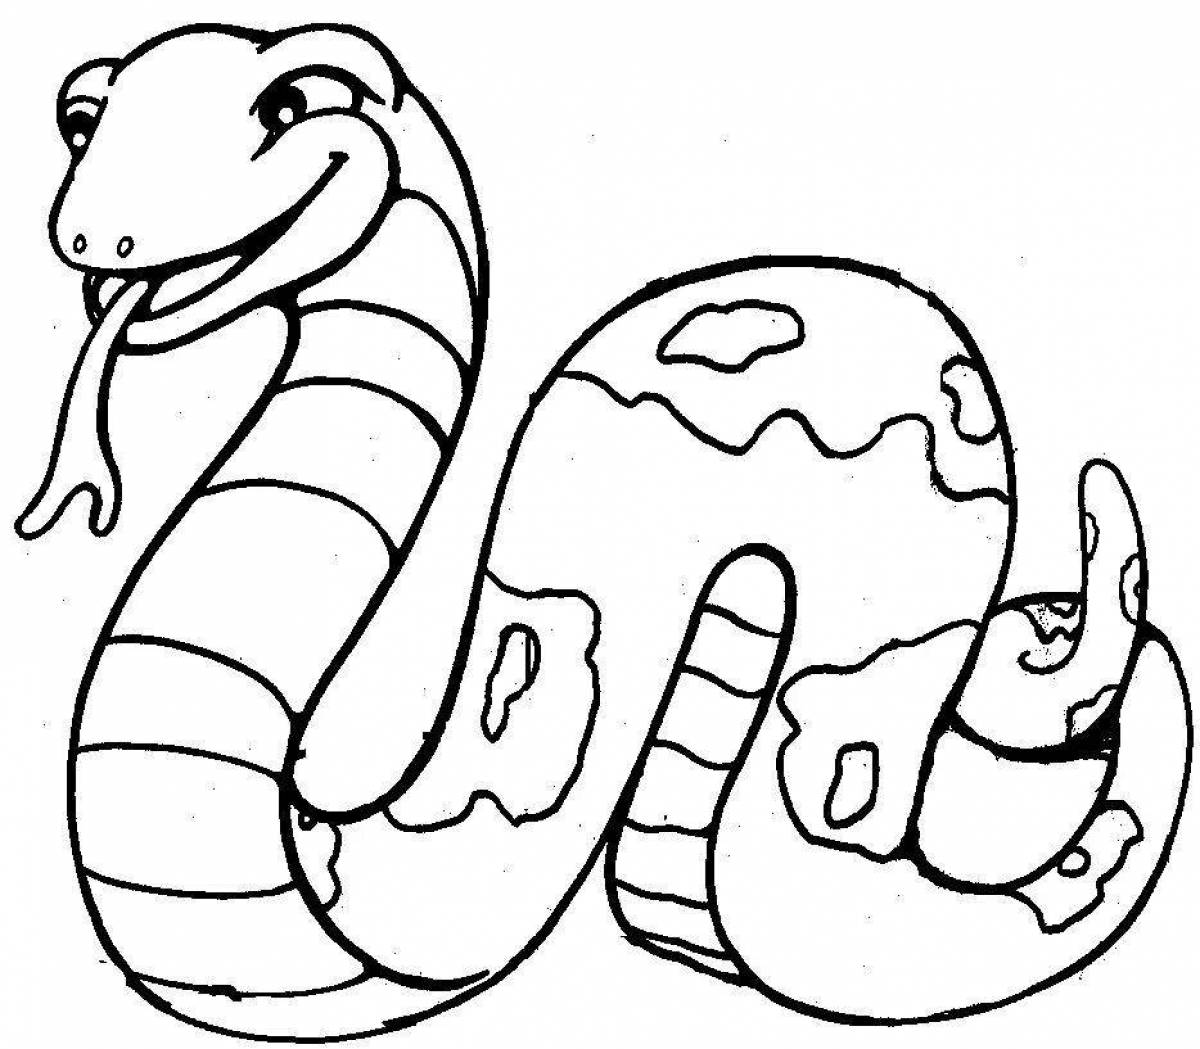 Раскраски змей распечатать. Змея раскраска. Змея раскраска для детей. Раскраска змеи для детей. Раскраска о змеях.